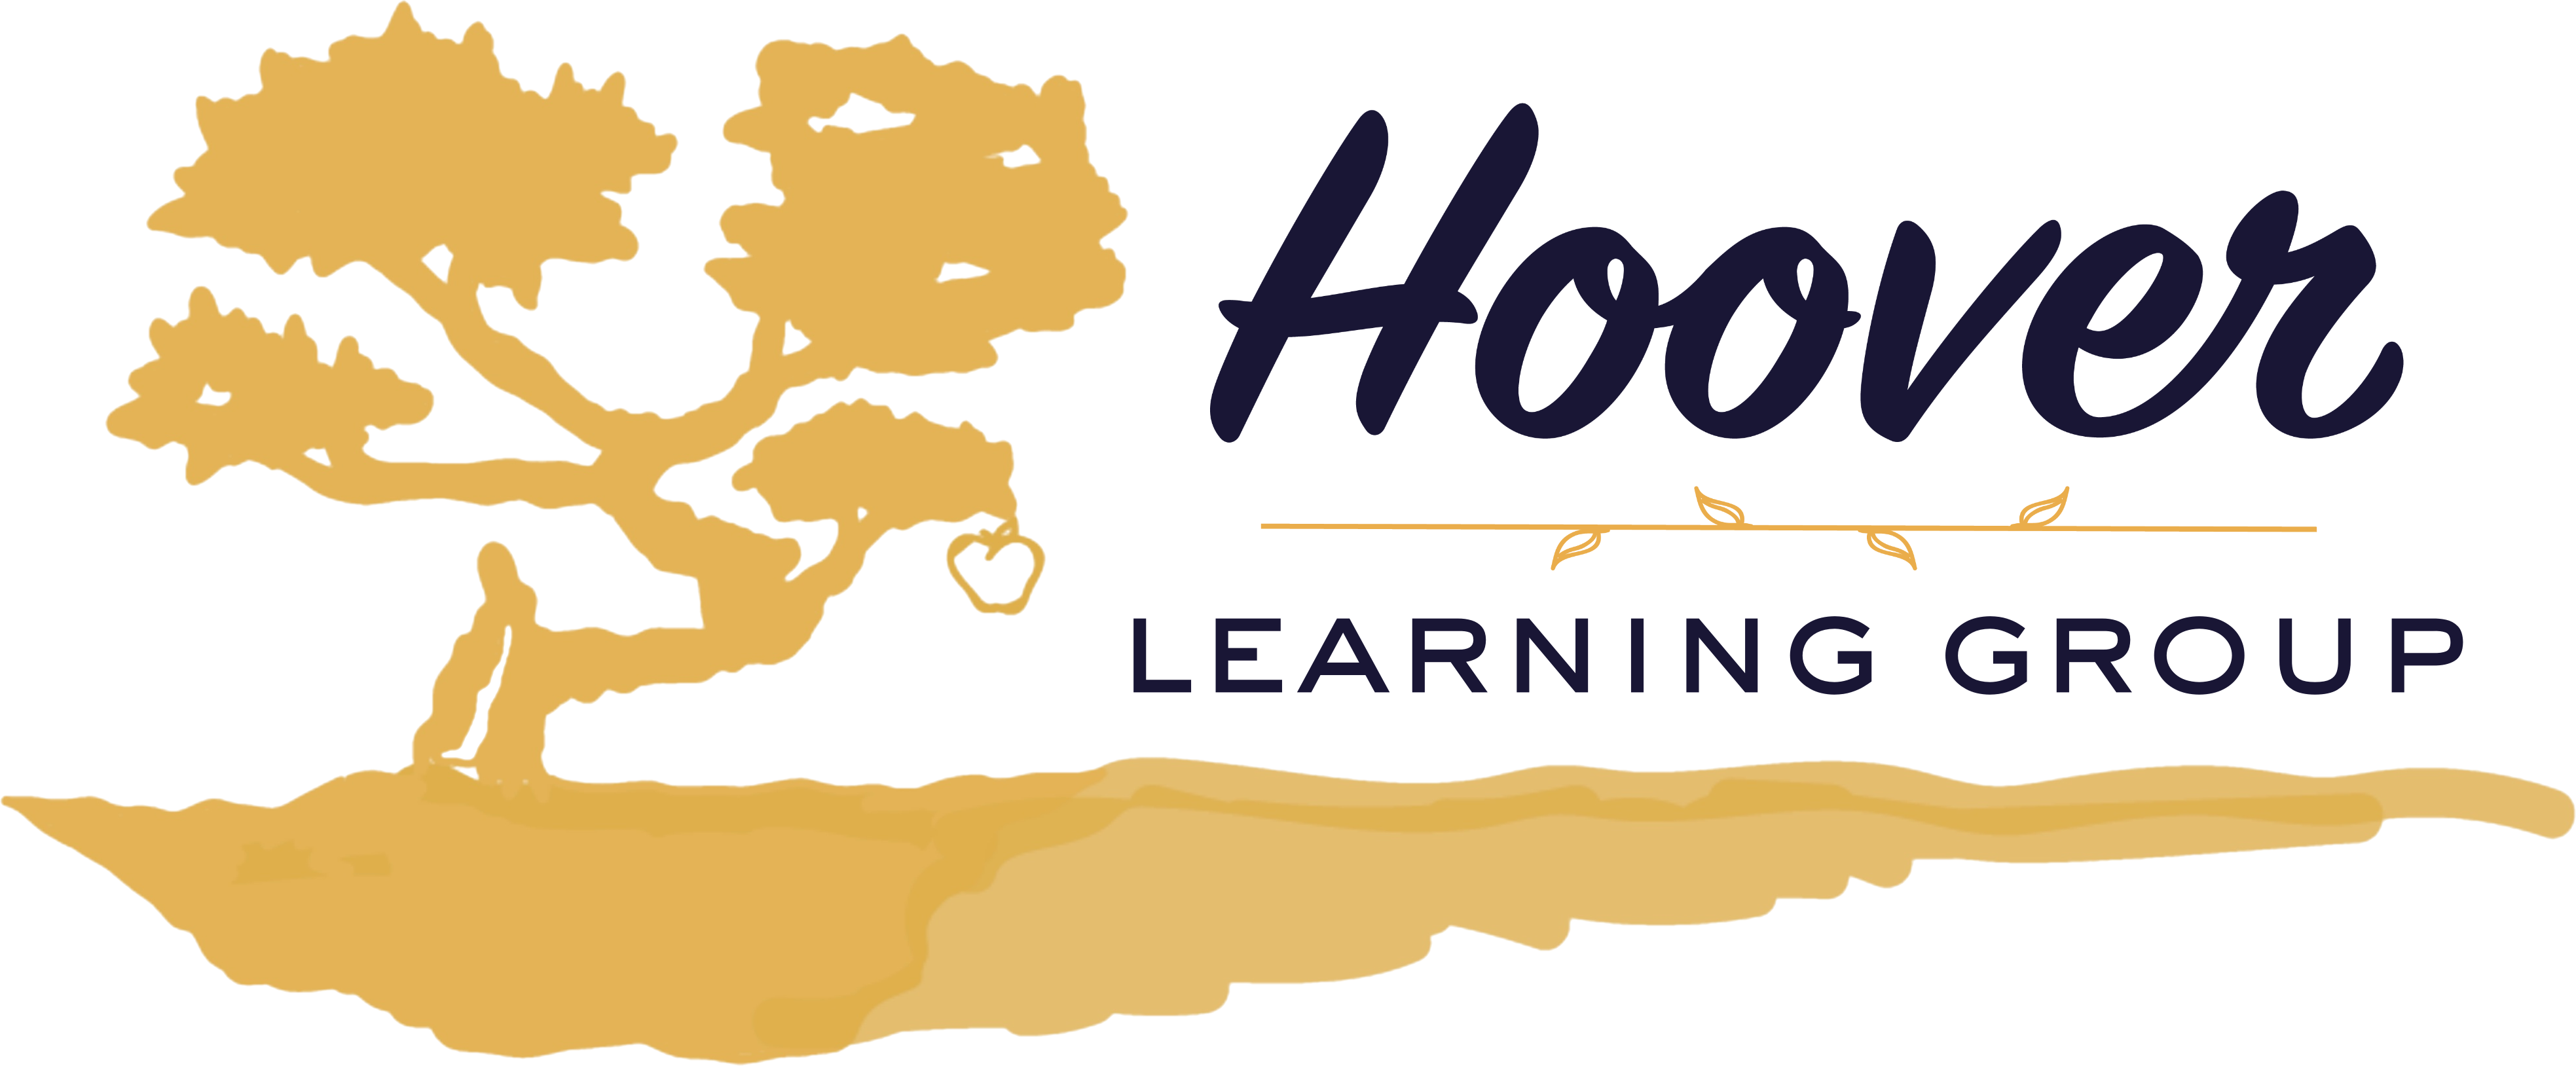 Hoover logo